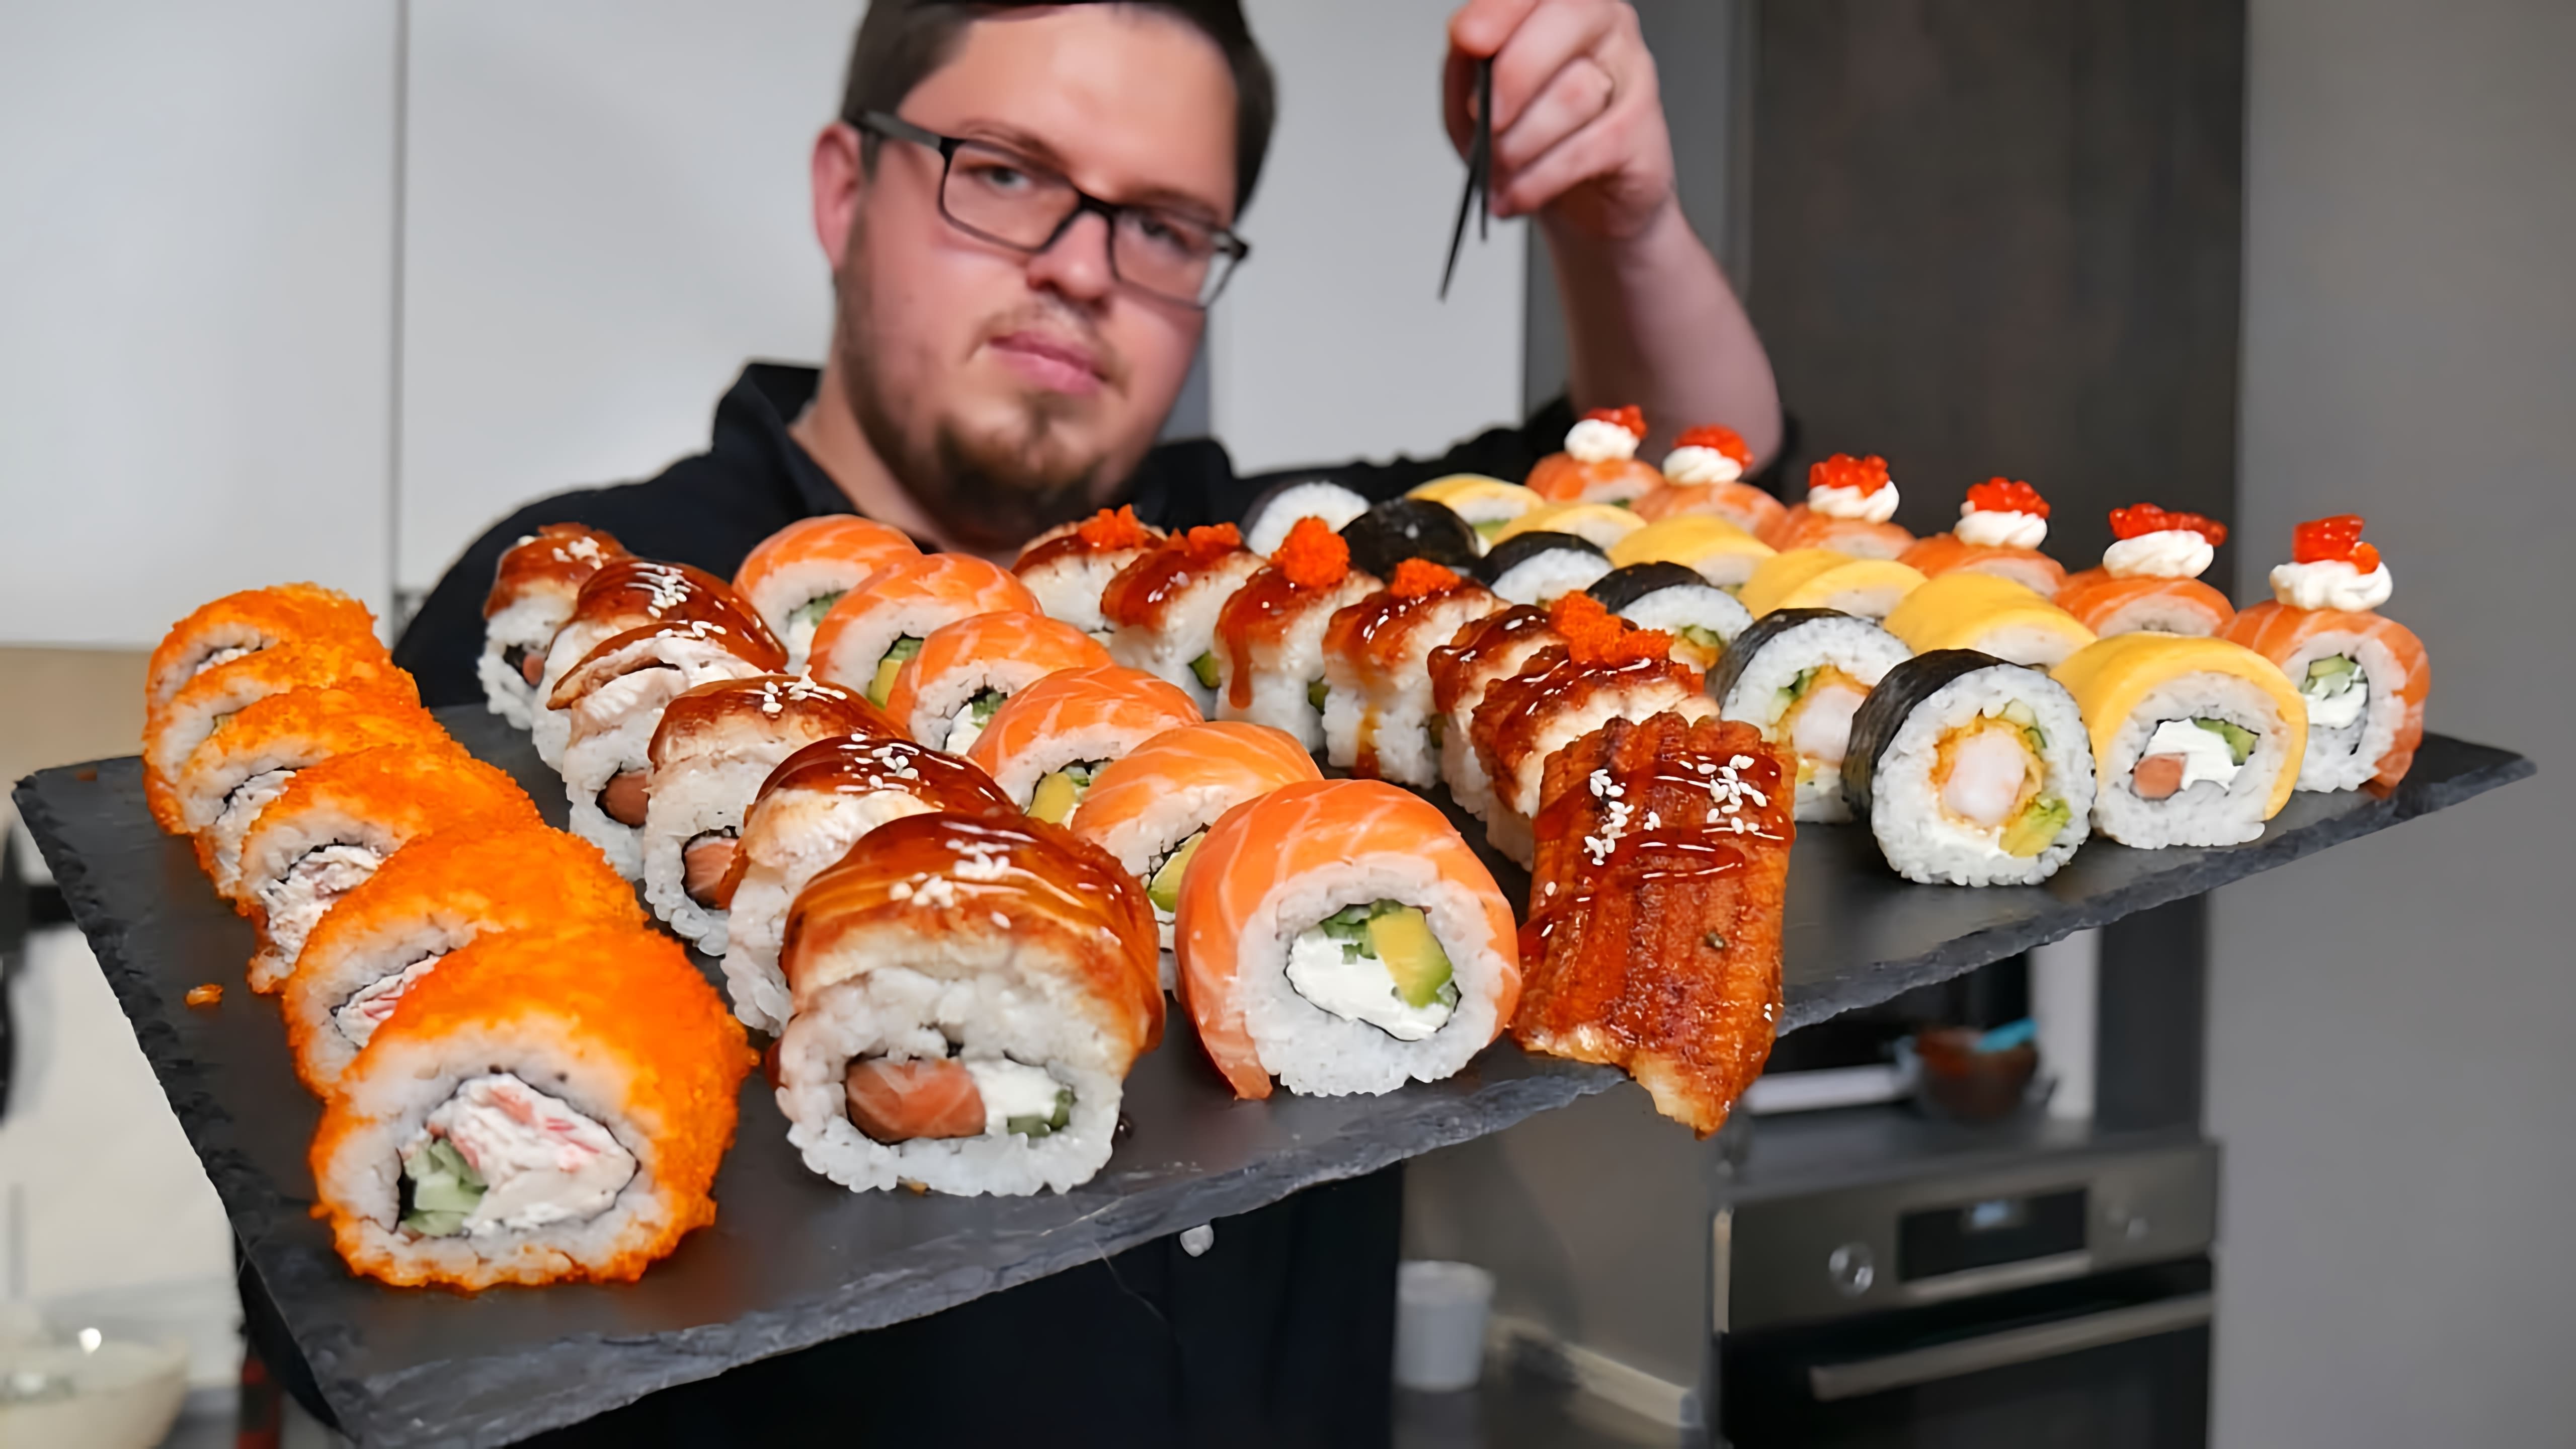 Видео рецепты для приготовления нескольких популярных видов суши в домашних условиях, включая роллы "Филадельфия", "Калифорния", "Дракон", "Аляска" и "Футомаки"